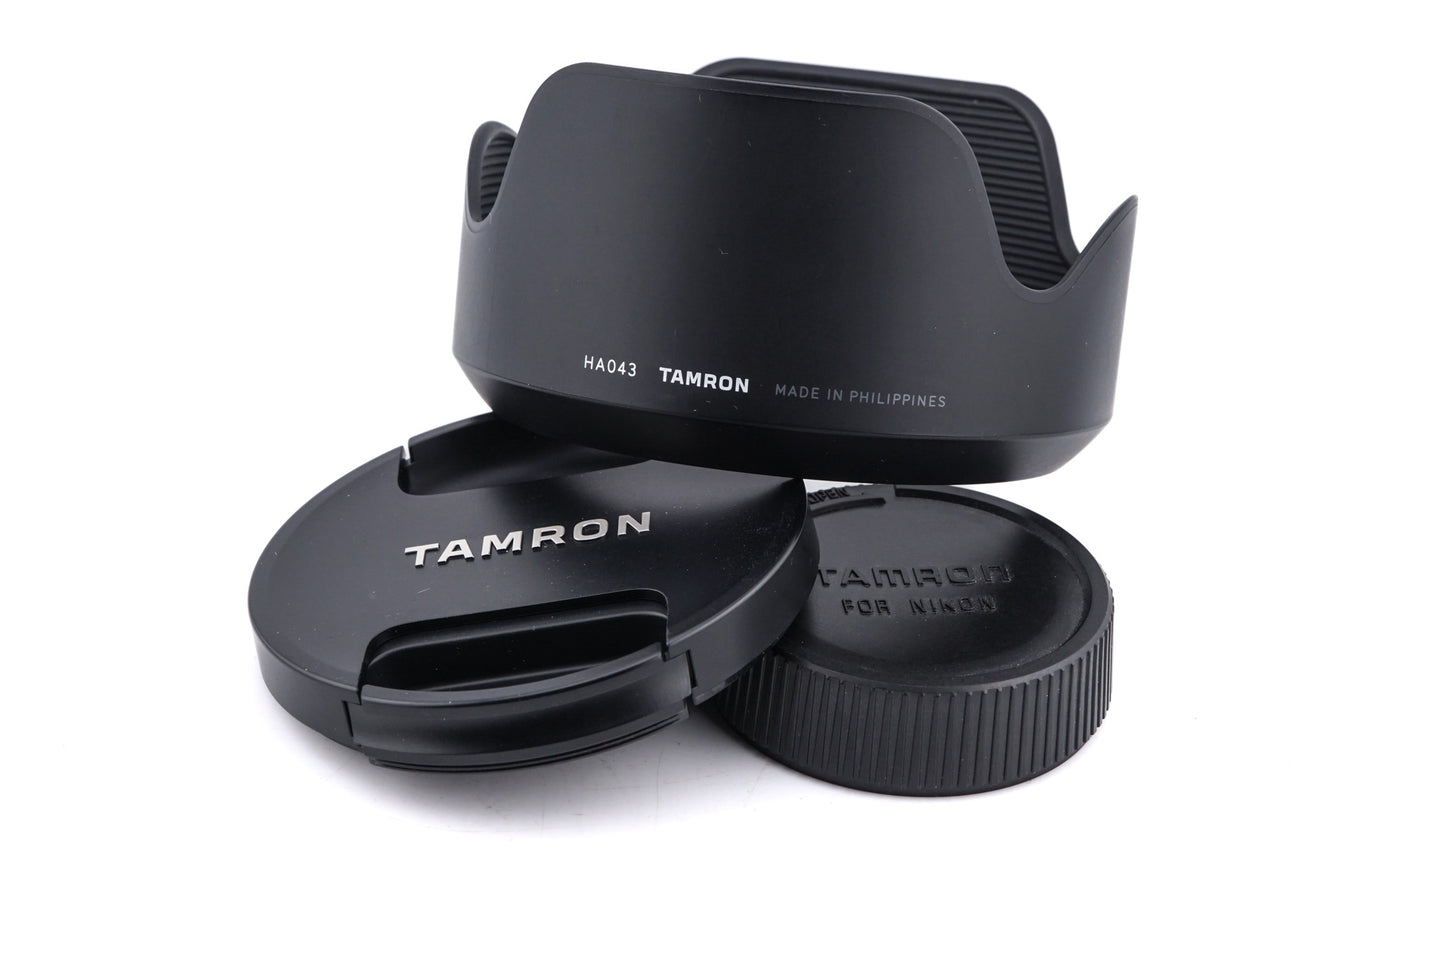 Tamron 35-150mm f2.8-4 Di VC OSD (A043)